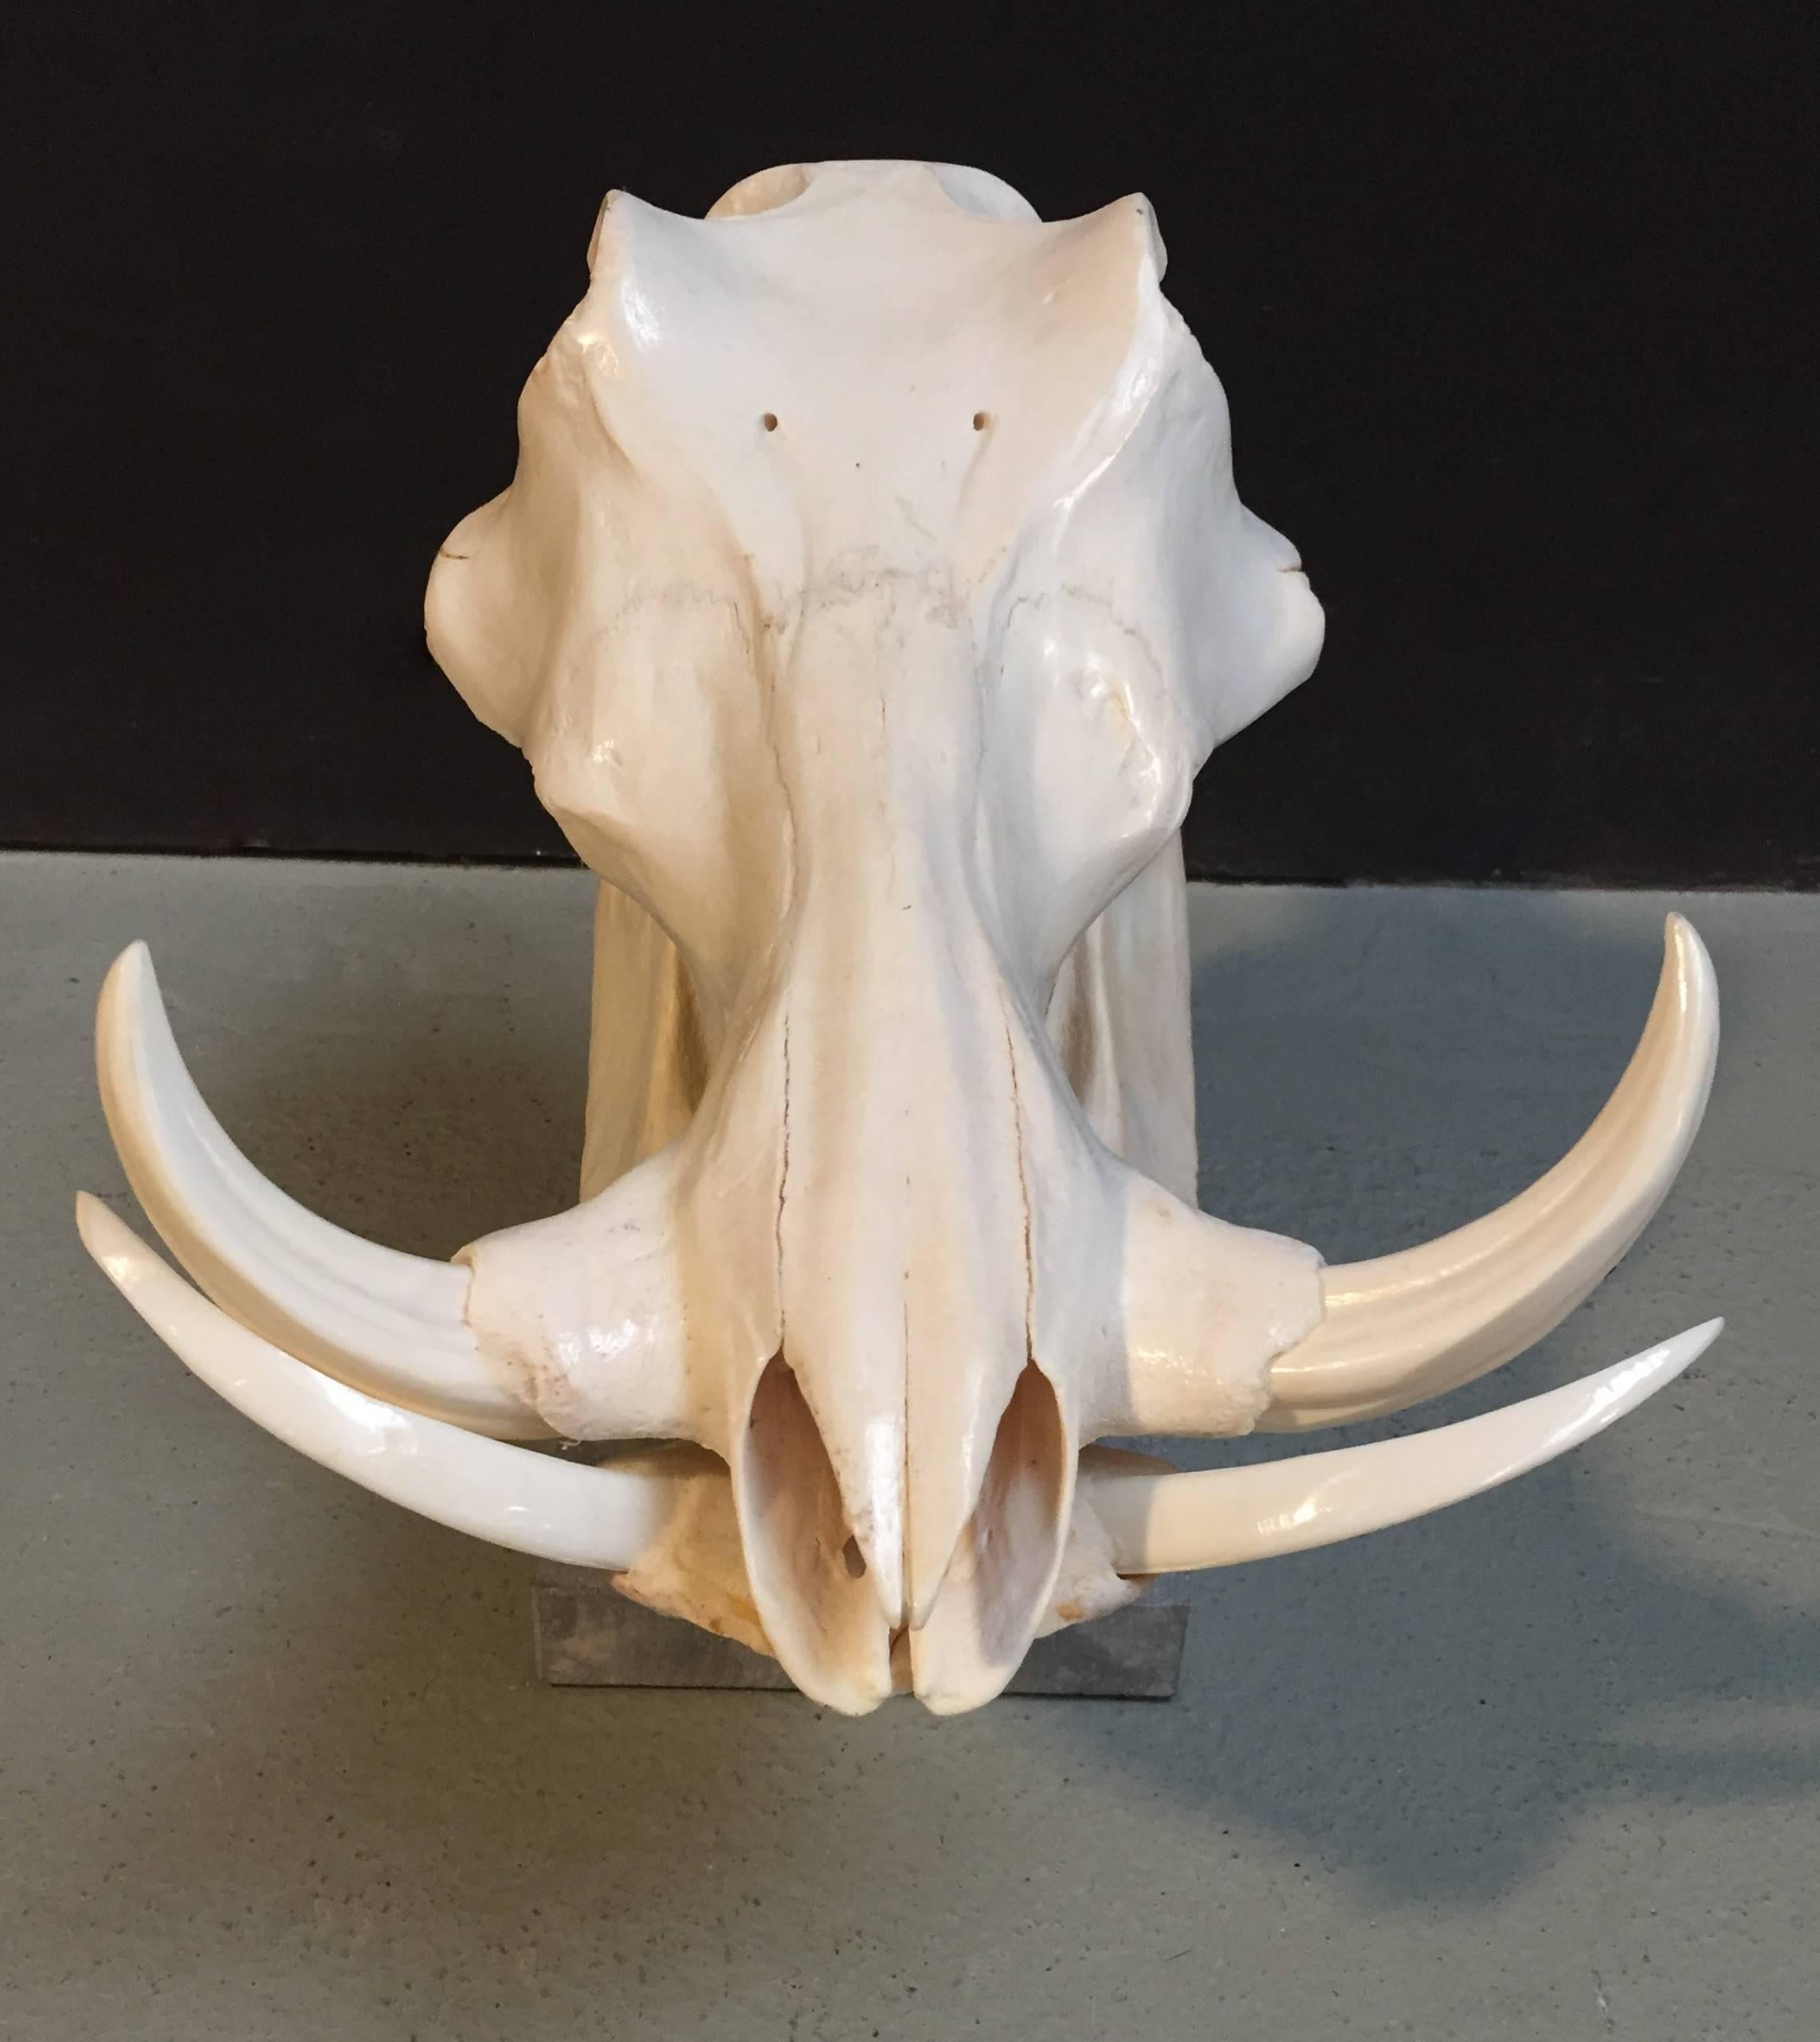 warthog skull for sale